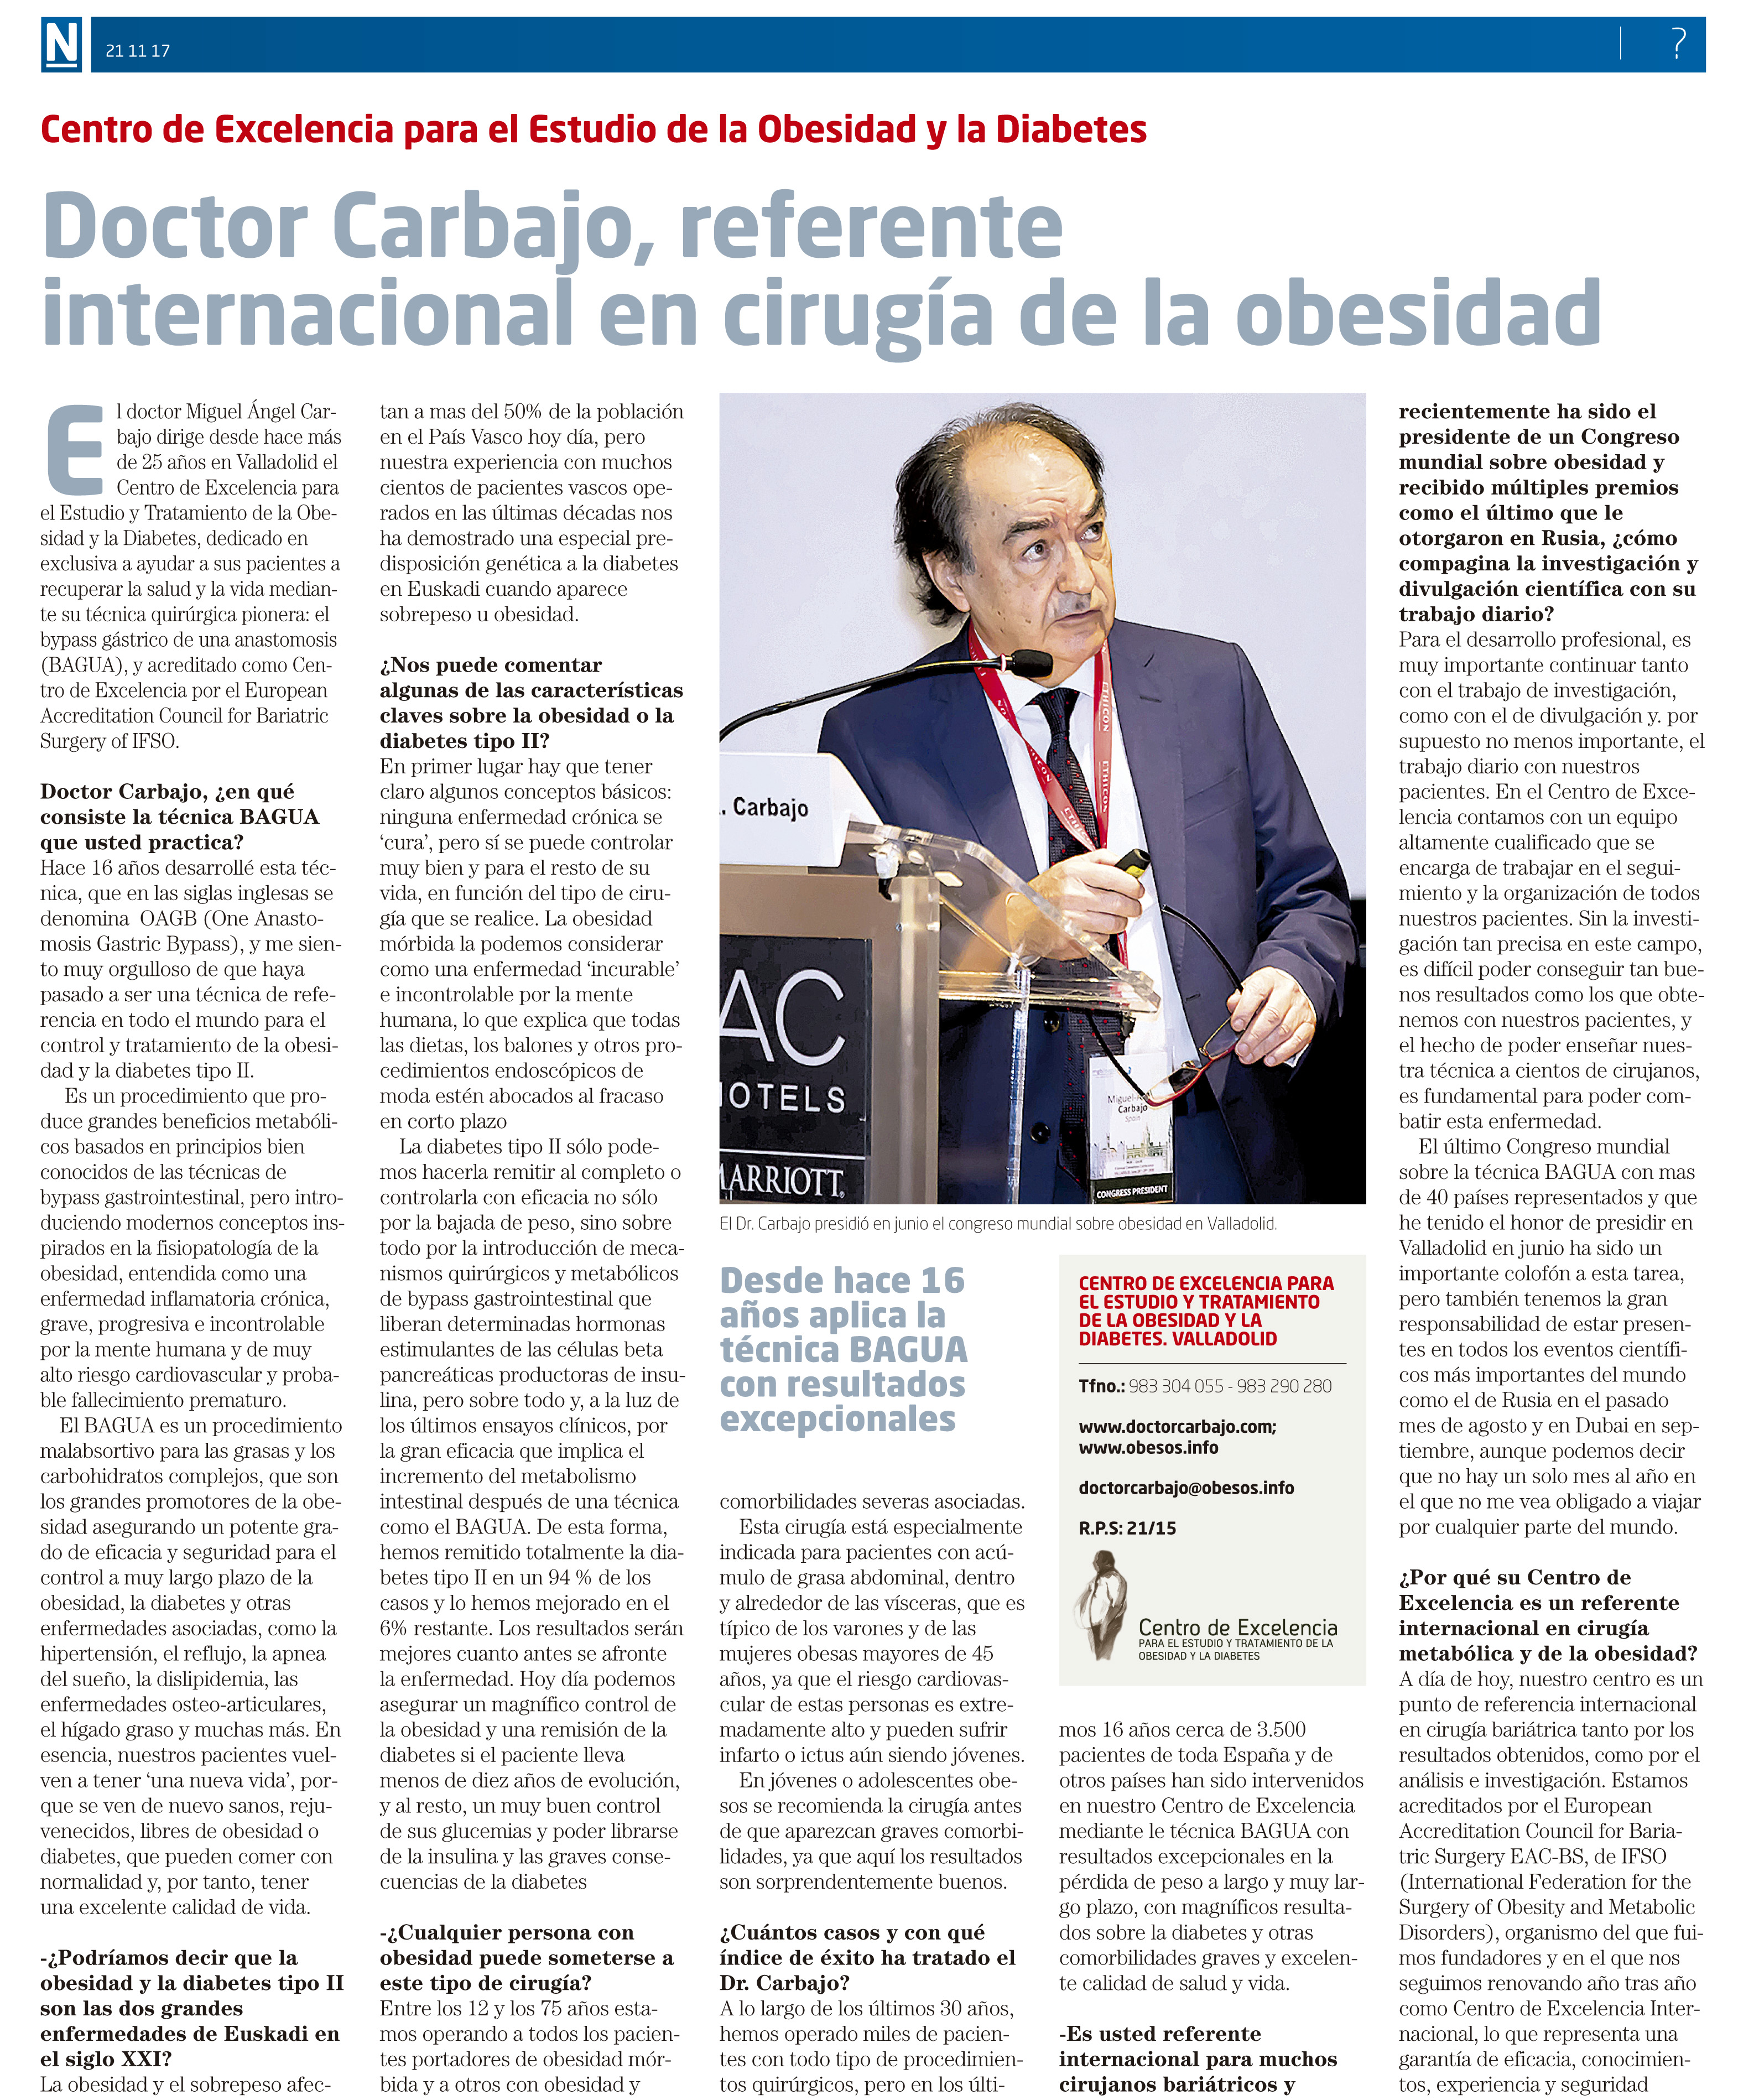 Doctor Carbajo, referente internacional en cirugía de la obesidad - El Nervión 13 febrero 2019